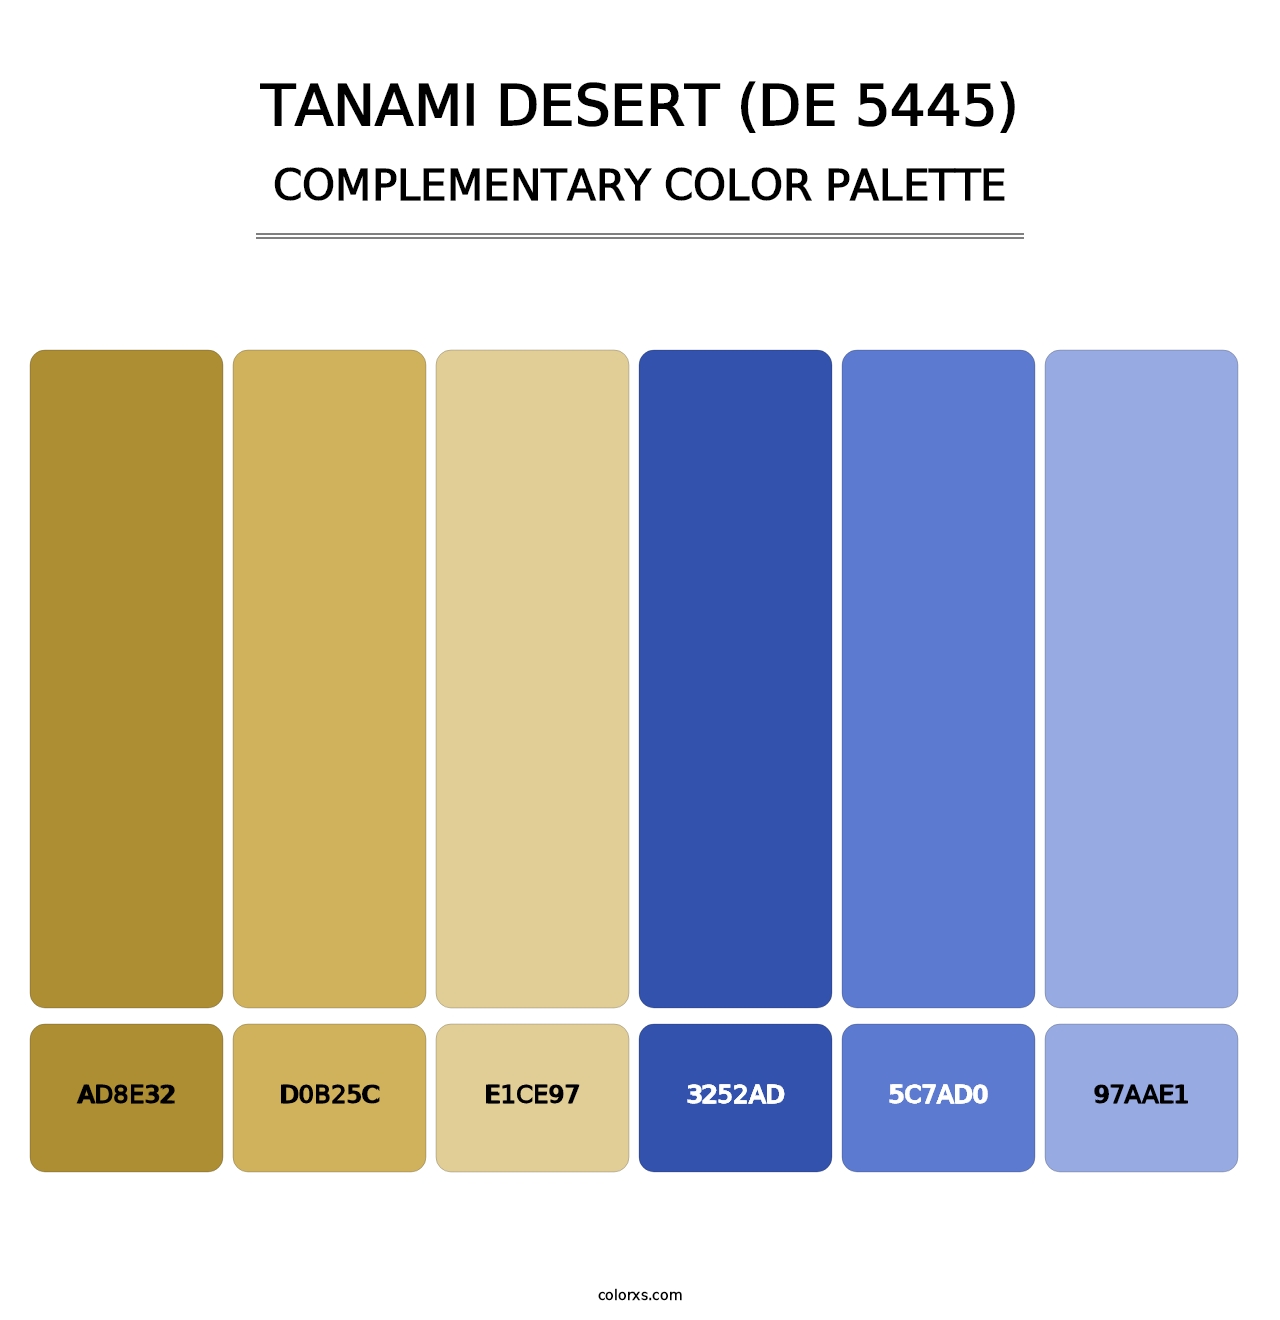 Tanami Desert (DE 5445) - Complementary Color Palette